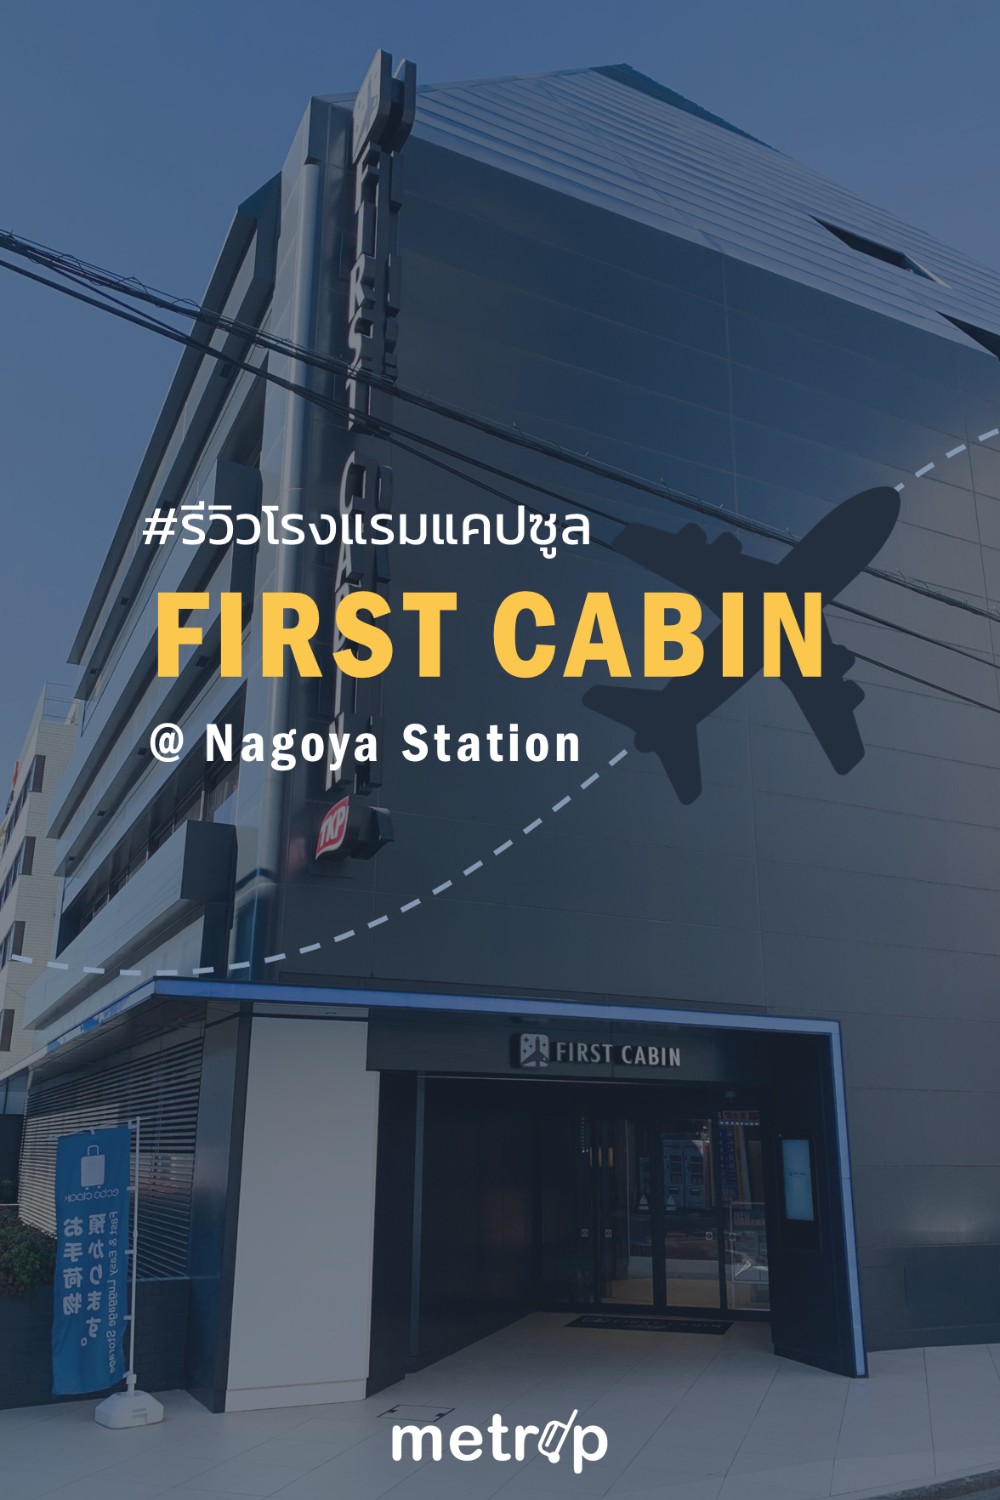 รีวิว โรงแรมแคปซูล First Cabin (นาโกย่า/โตเกียว/โอซาก้า/ฟุกุโอกะ) ใกล้สถานี  ราคาถูก สะอาด มีบ่อออนเซ็น | Metrip - Pantip